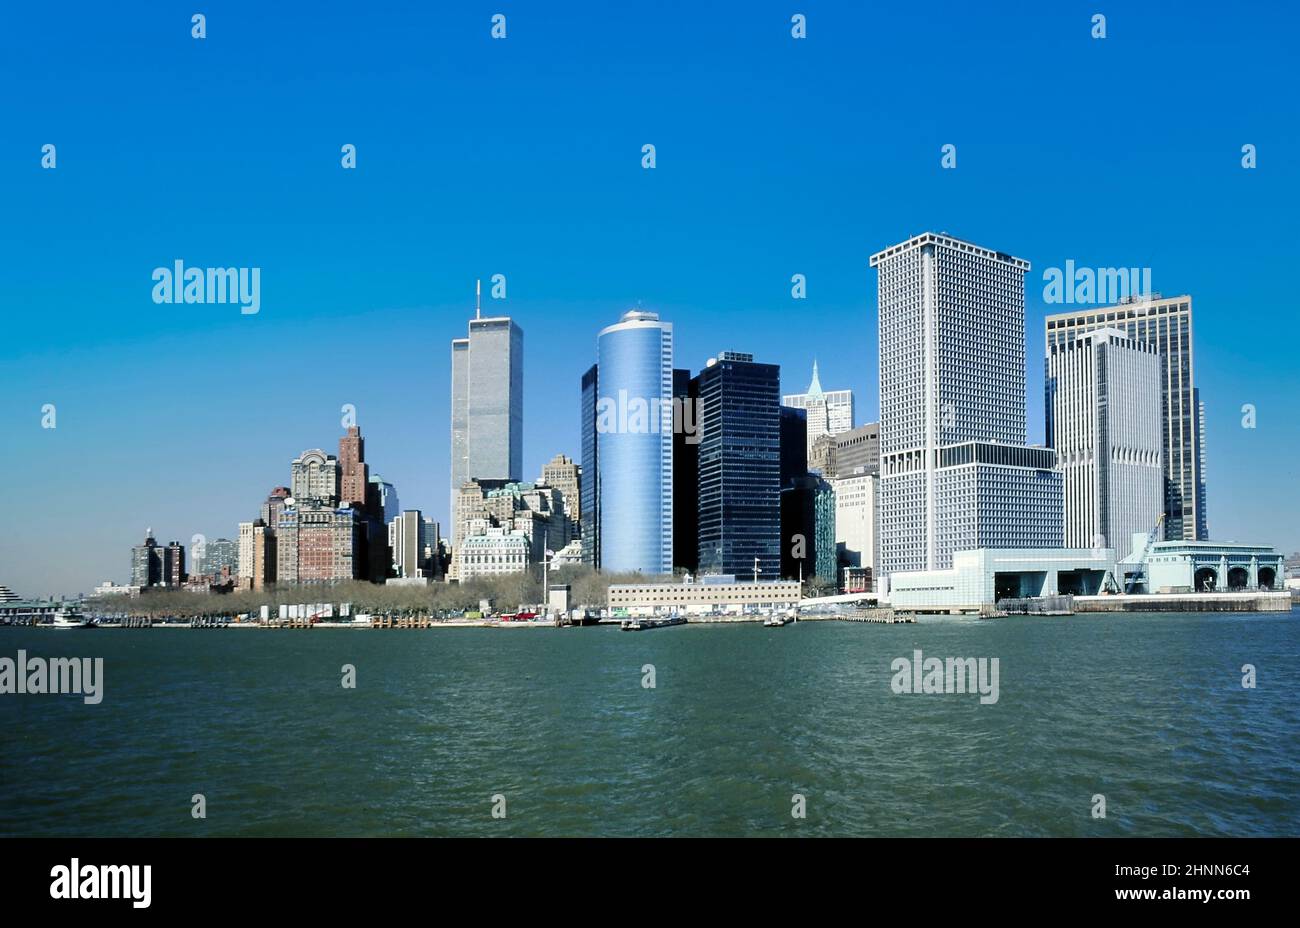 Vista al centro de Manhattan con el horizonte y el World Trade Center bajo el cielo azul claro Foto de stock